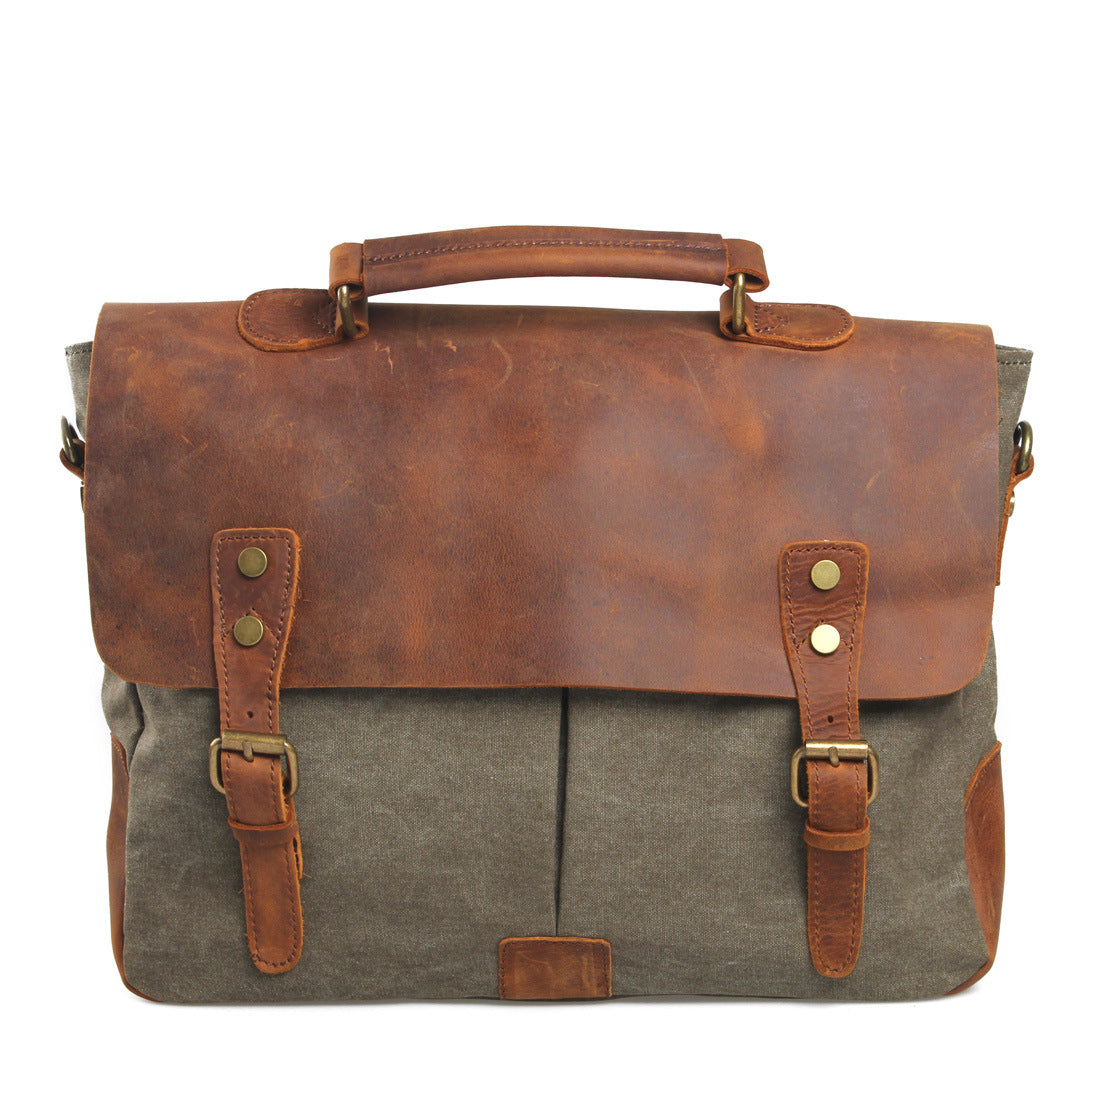 Vintage Messenger Bag Shoulder Bag Breifcase Handbag Leather Bag for Men Travel